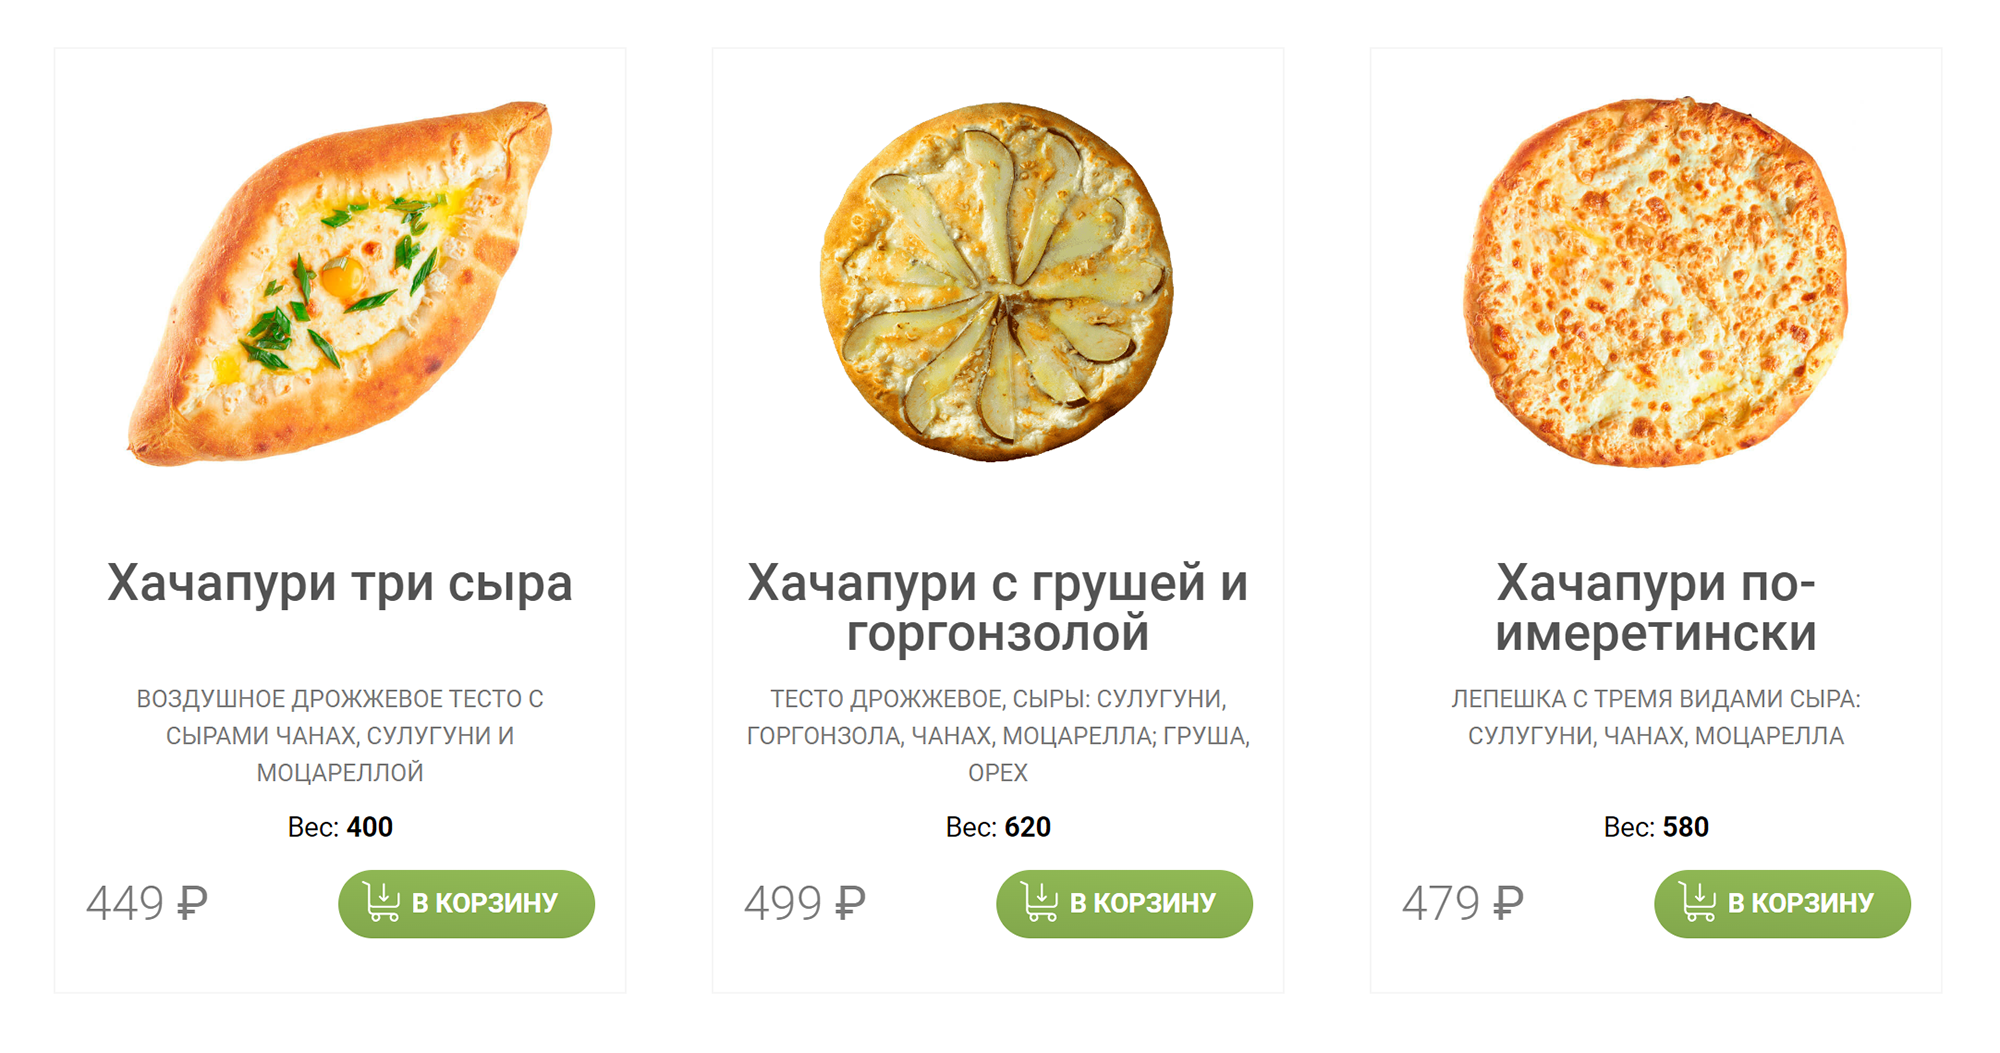 Еще заметили, что хачапури стали дороже, но вес уменьшился примерно на 50 г. Источник: mamamia-pizza.ru